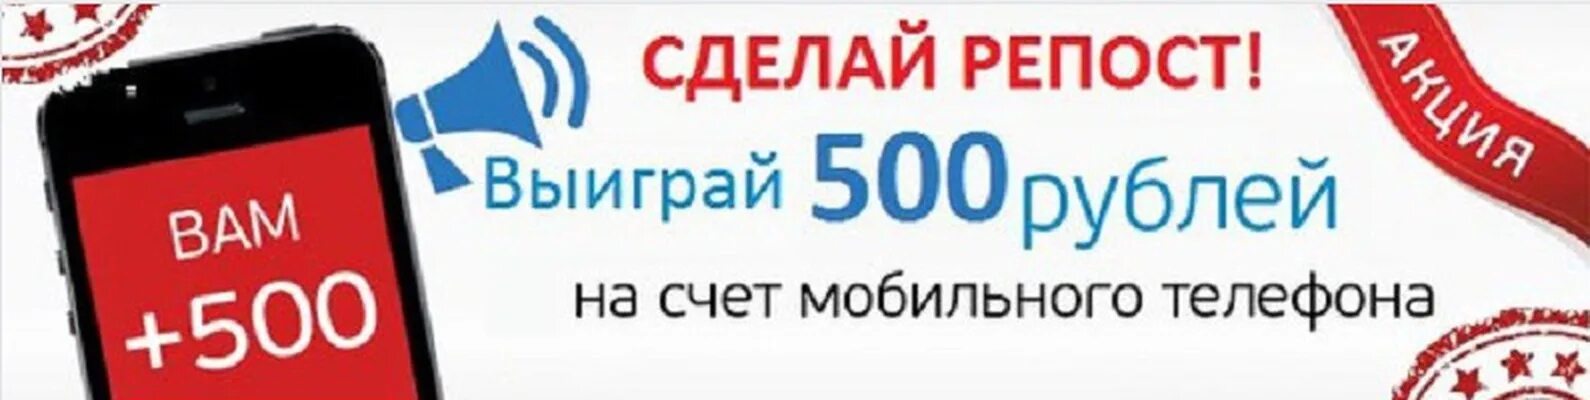 Выиграл 500 рублей. 500 Рублей за репост. 500 Рублей на счет мобильного. 500 Рублей на телефон. Выиграй 500 рублей.